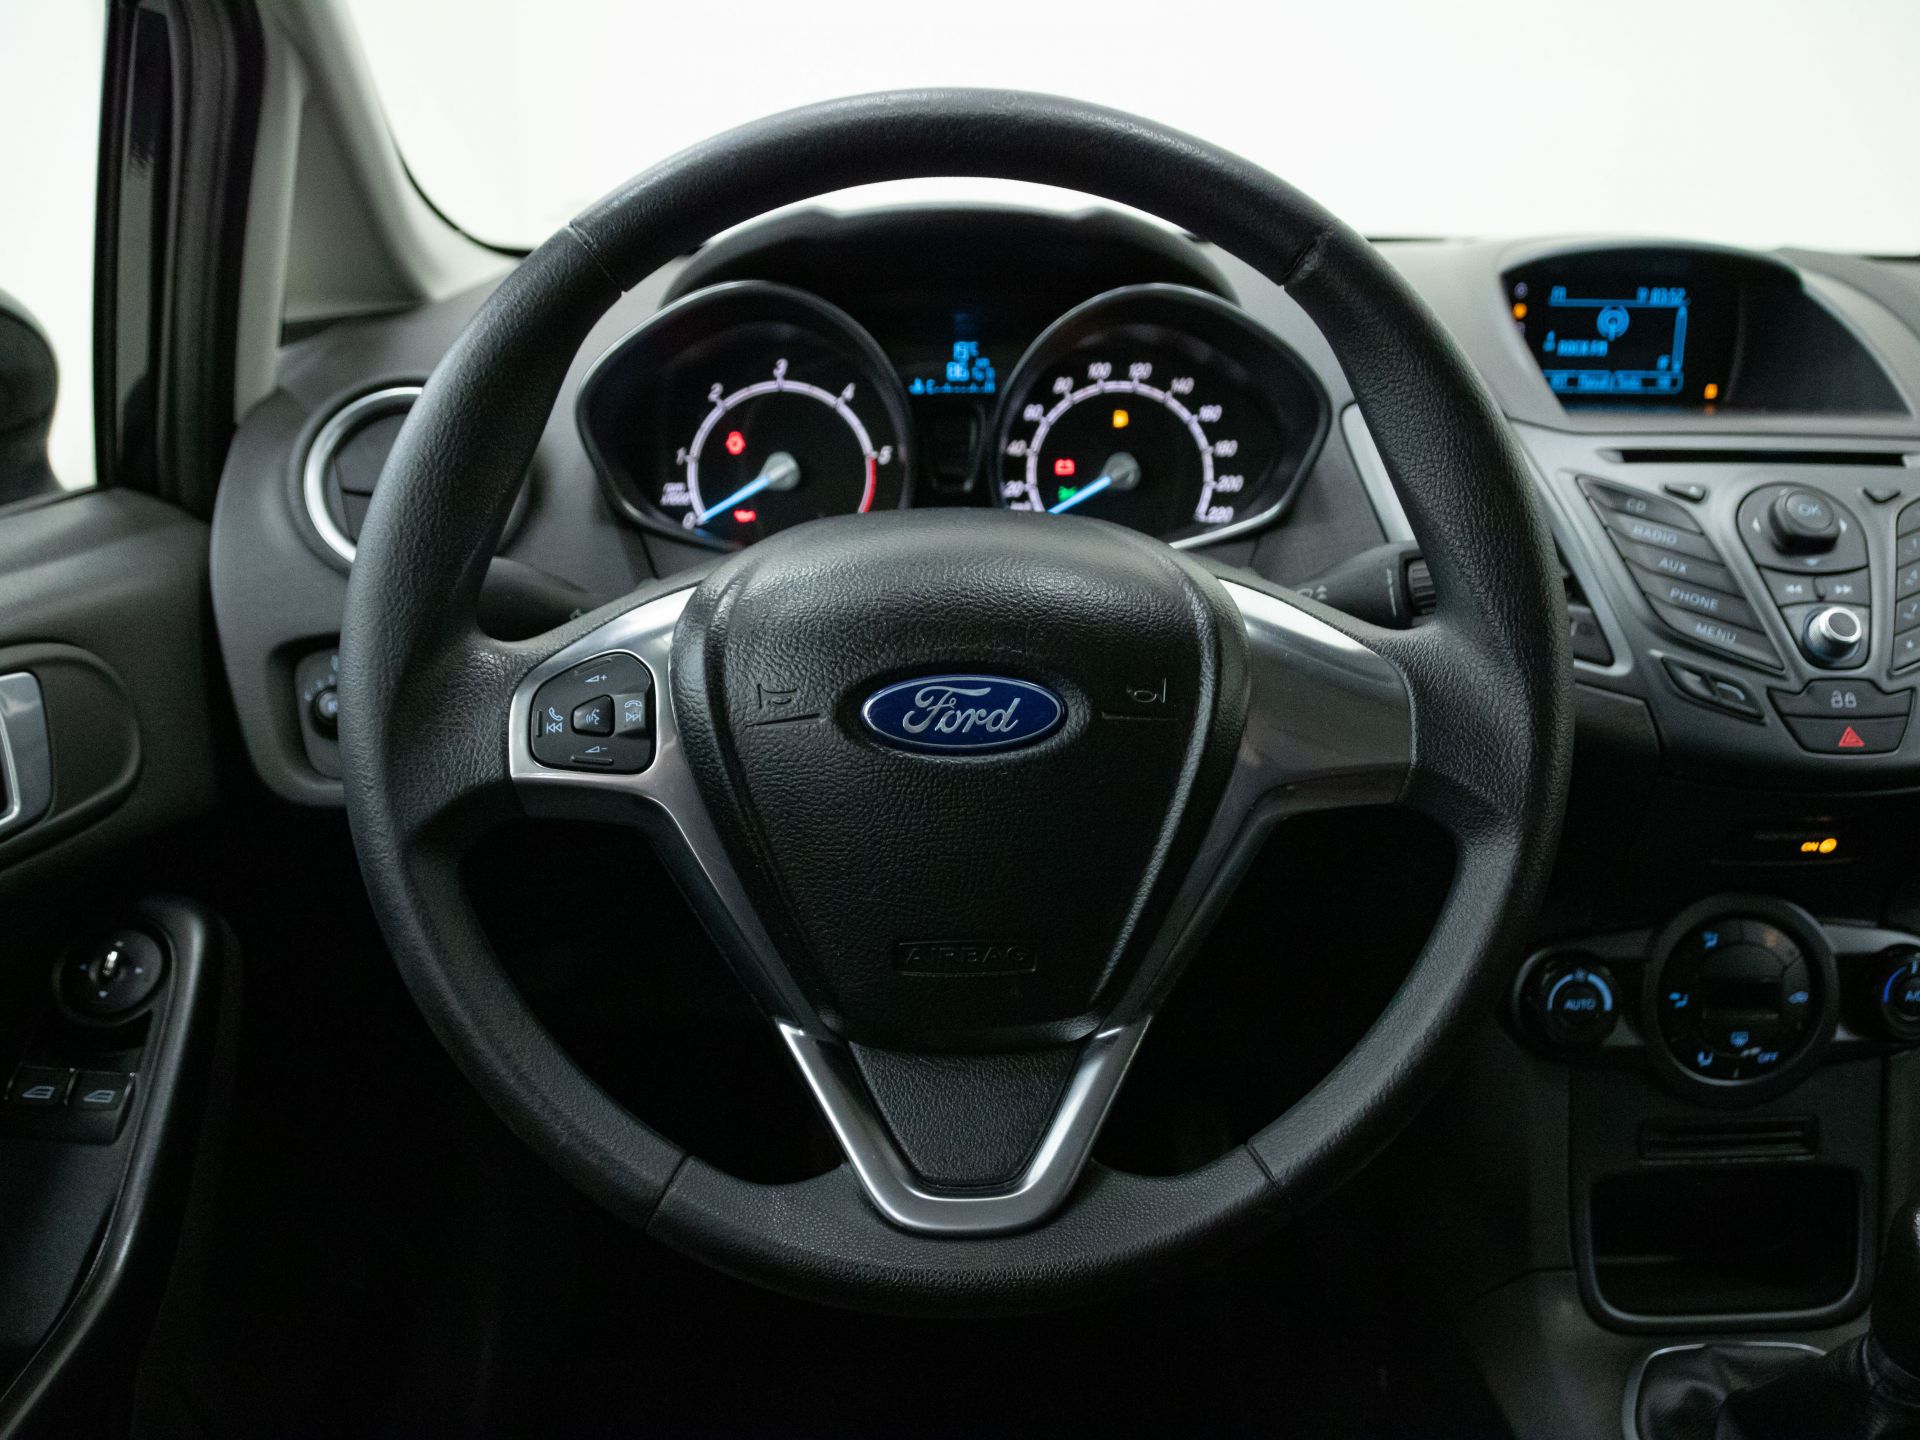 Ford Fiesta 1.5 TDCi 75cv Trend 5p